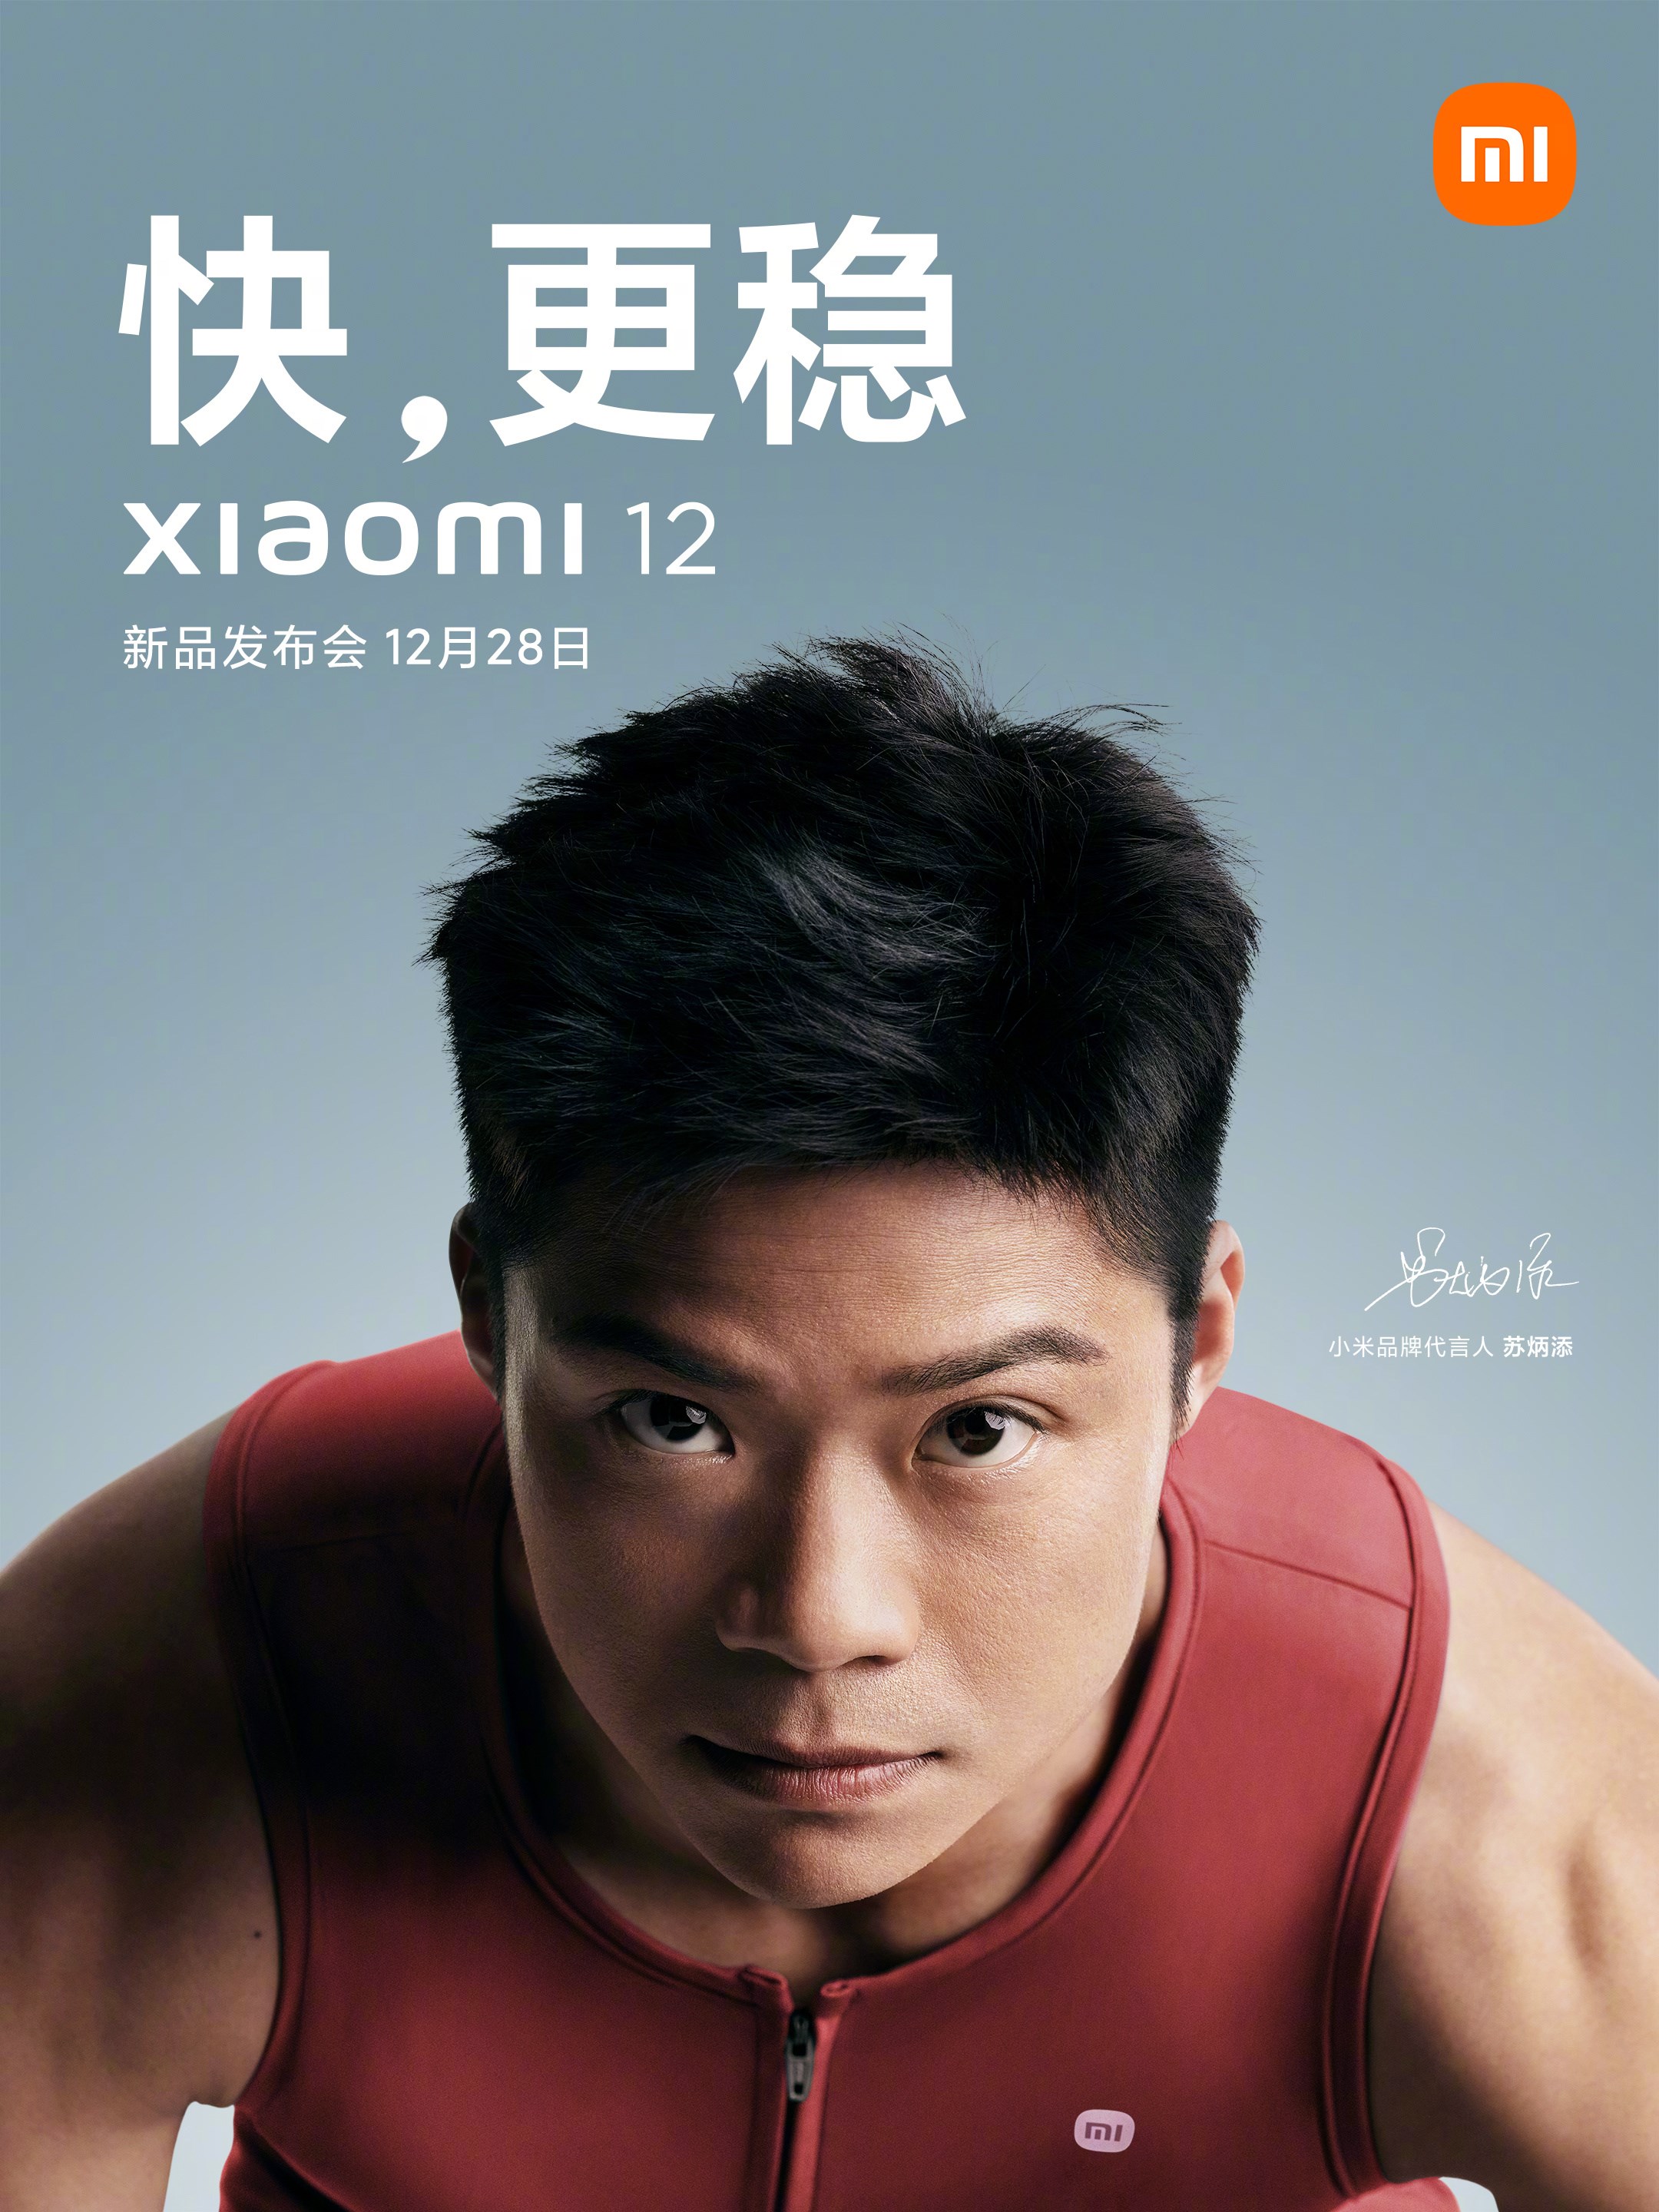 Xiaomi 12'nin tanıtım tarihi resmen açıklandı